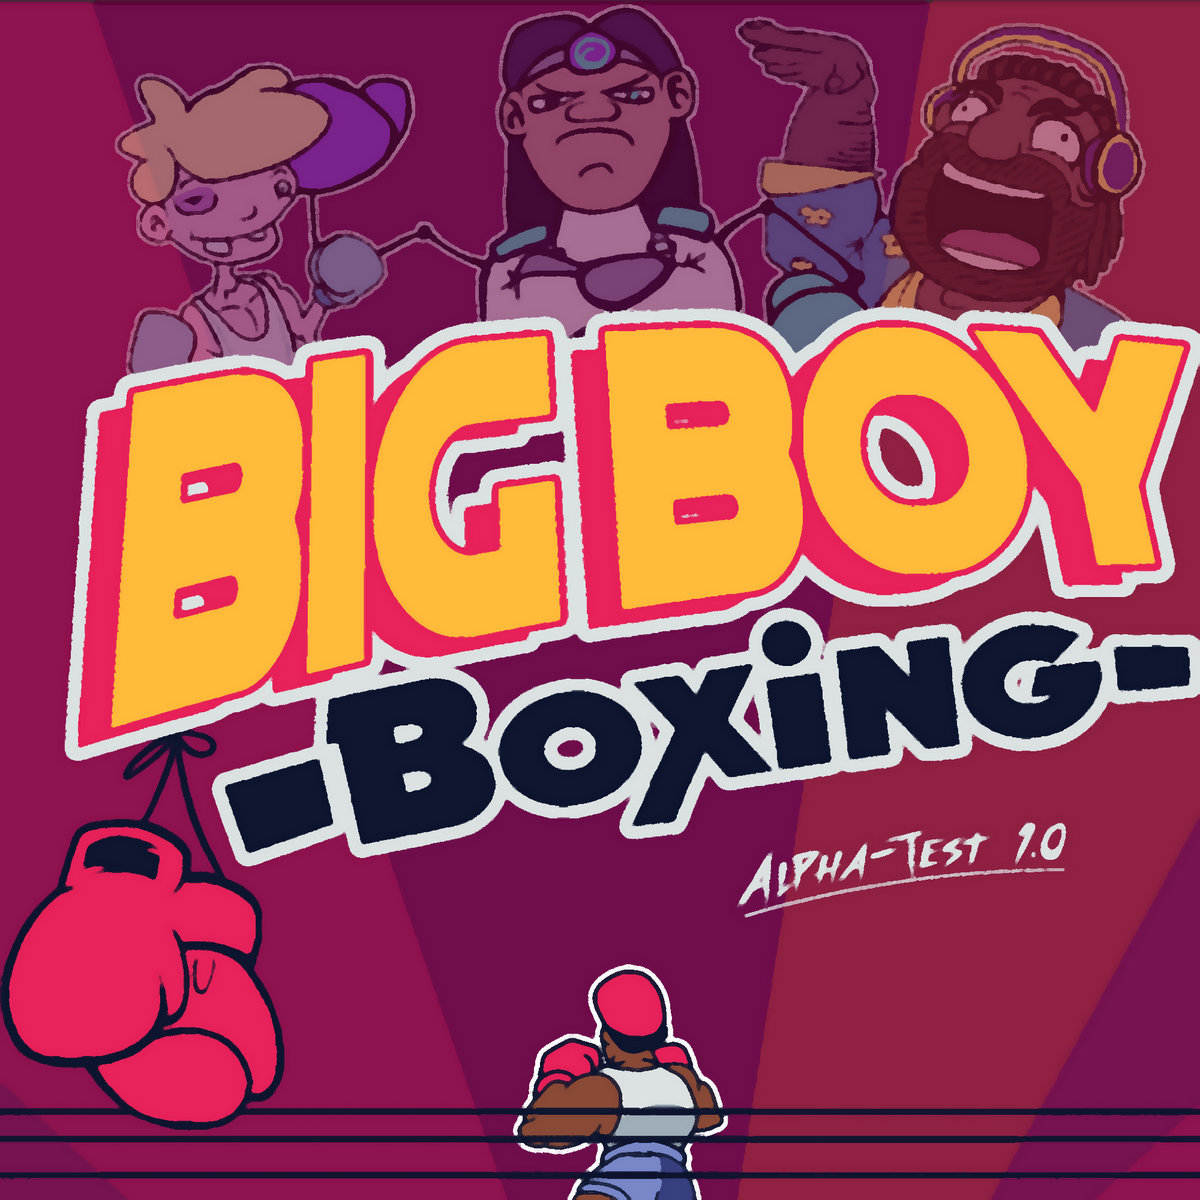 Big boy i wanna big boy. Биг бойс. Box boy игра. Команда Биг бойс. Boo игра.